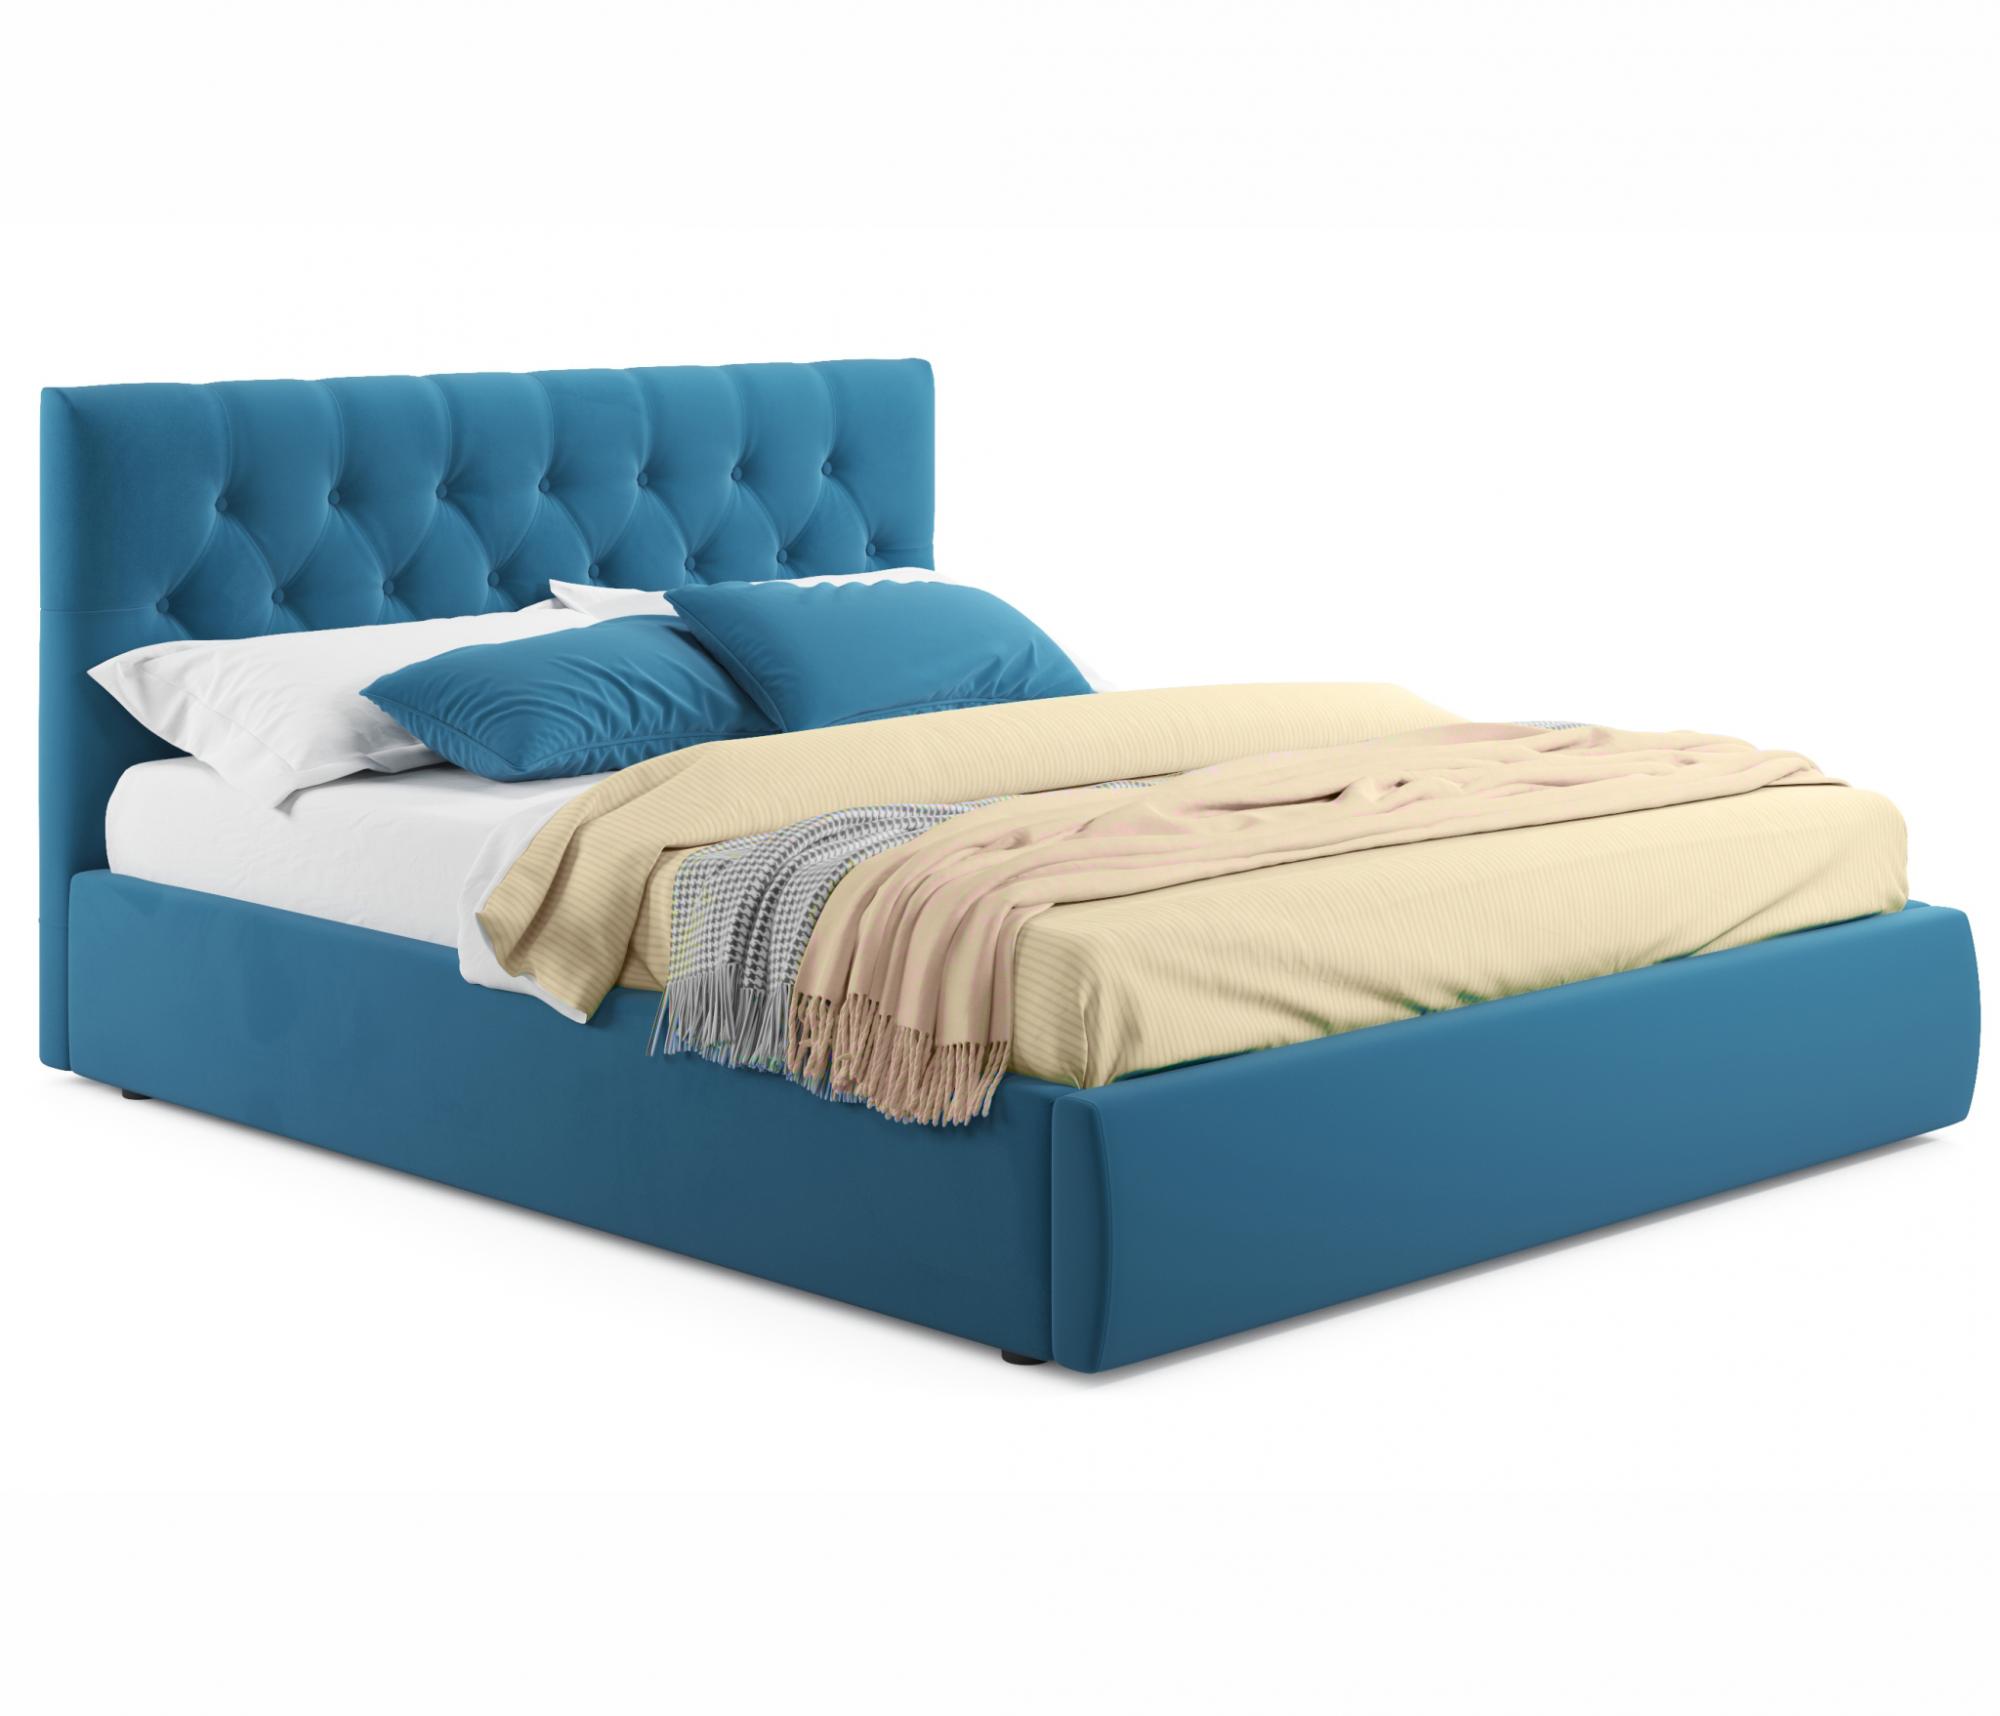 Мягкая кровать Verona 1600 синяя с подъемным механизмом